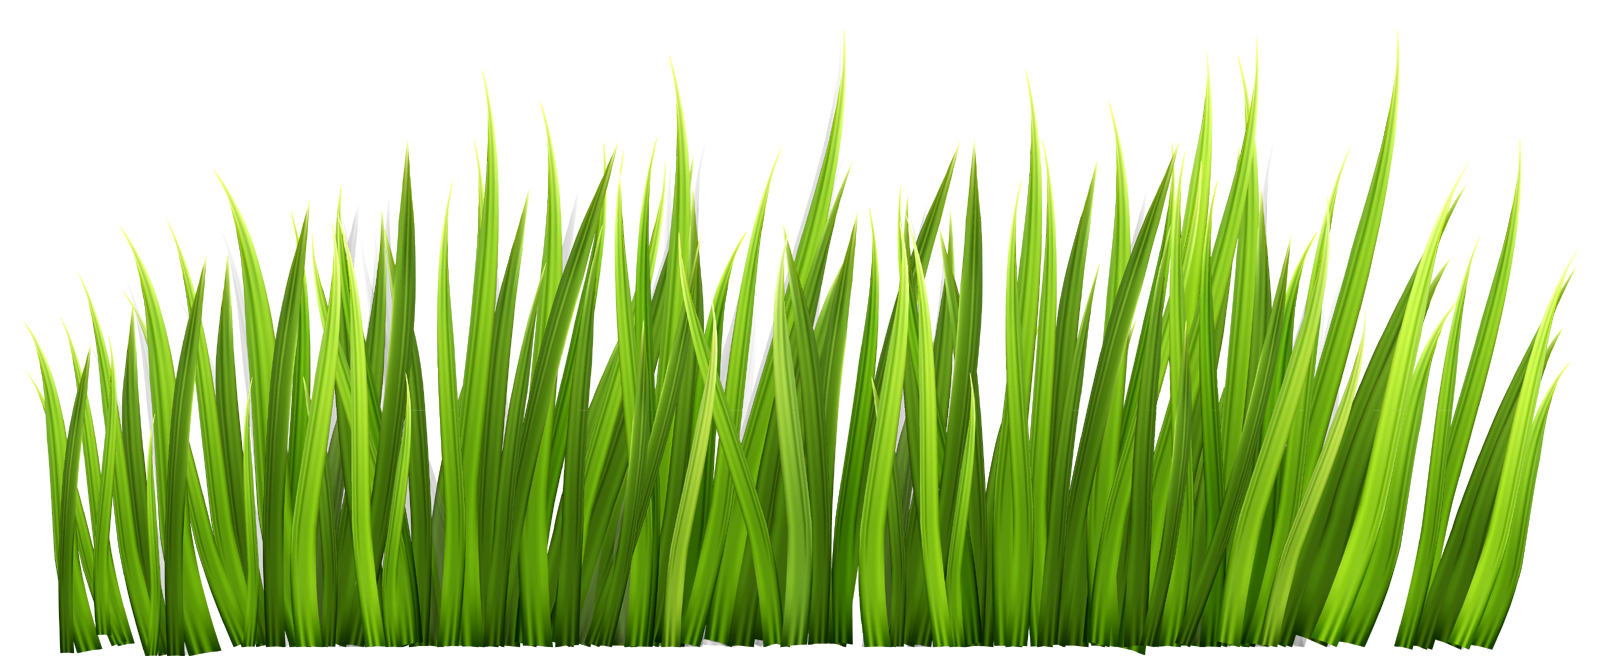 Grass clipart transparent